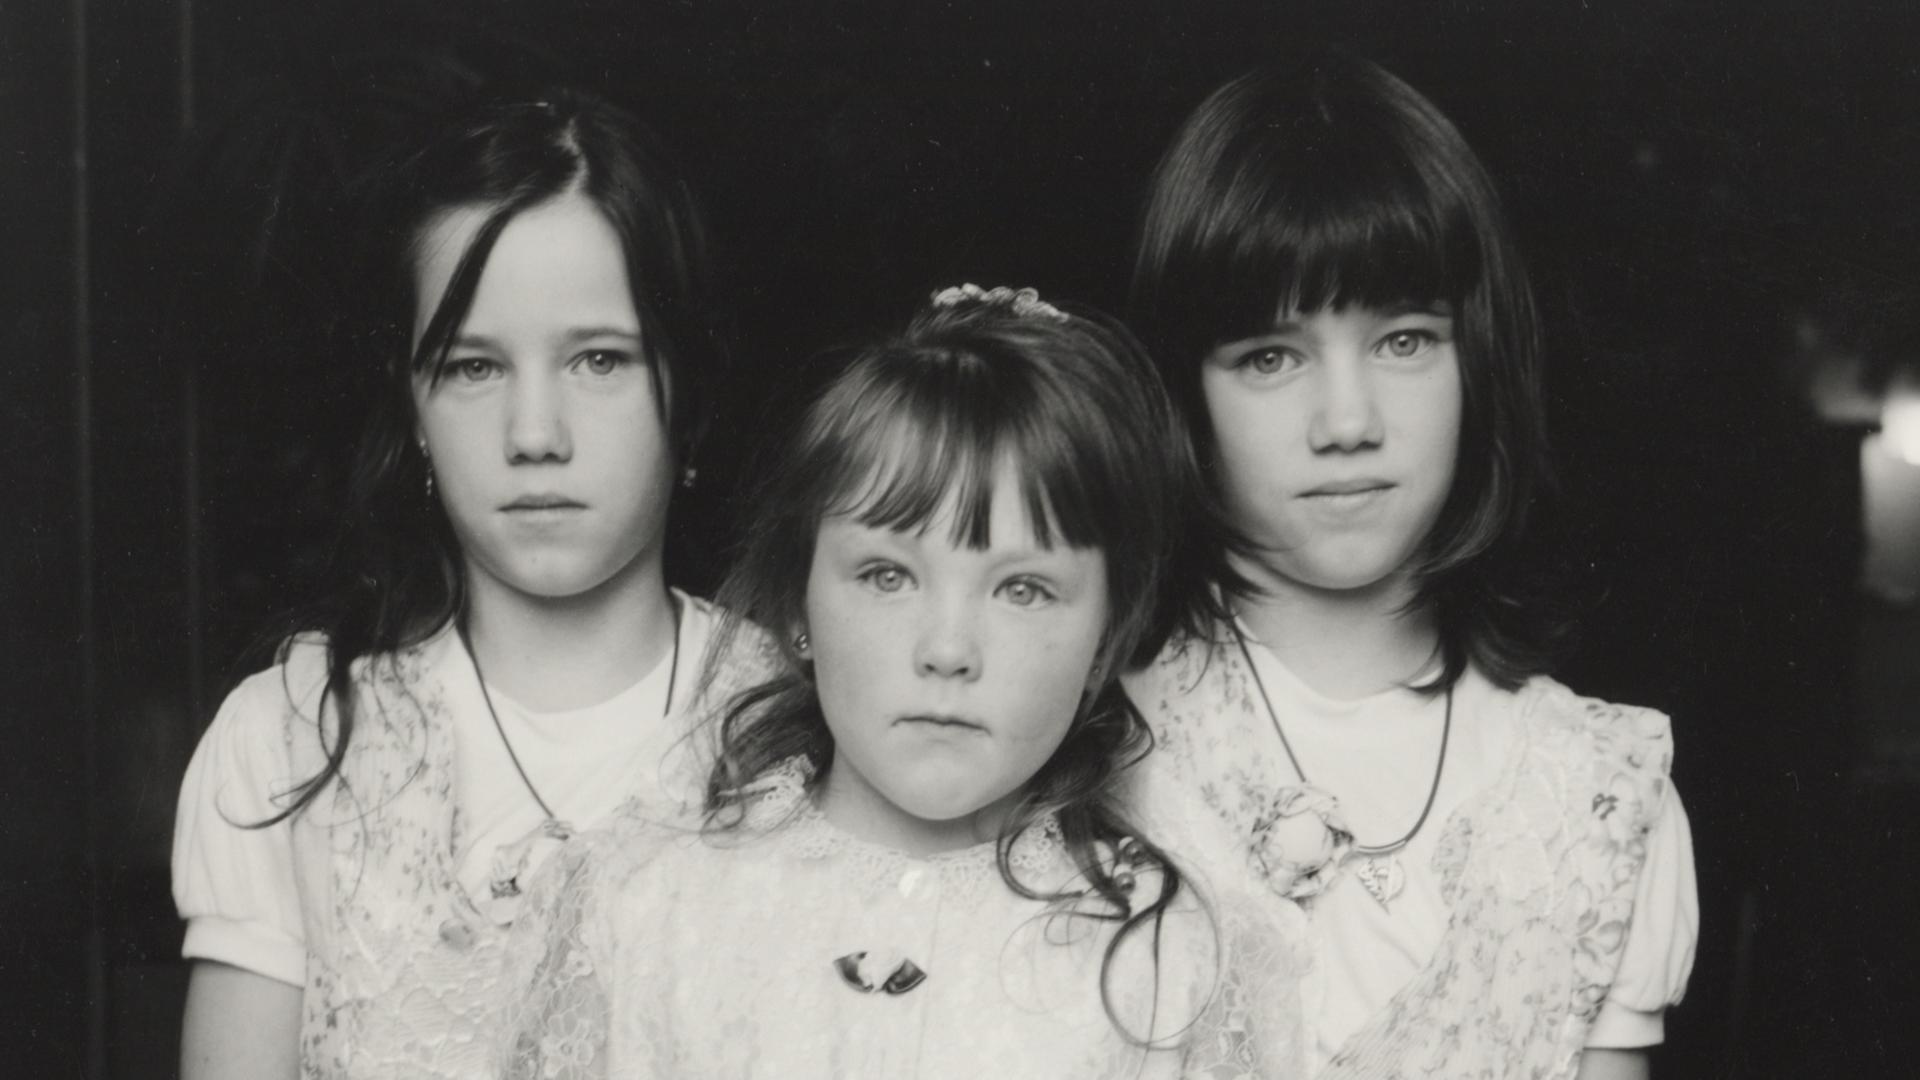 Schwarz-weiß Foto von drei kleinen Schwestern in weißen Kleidern, die skeptisch in die Kamera gucken.